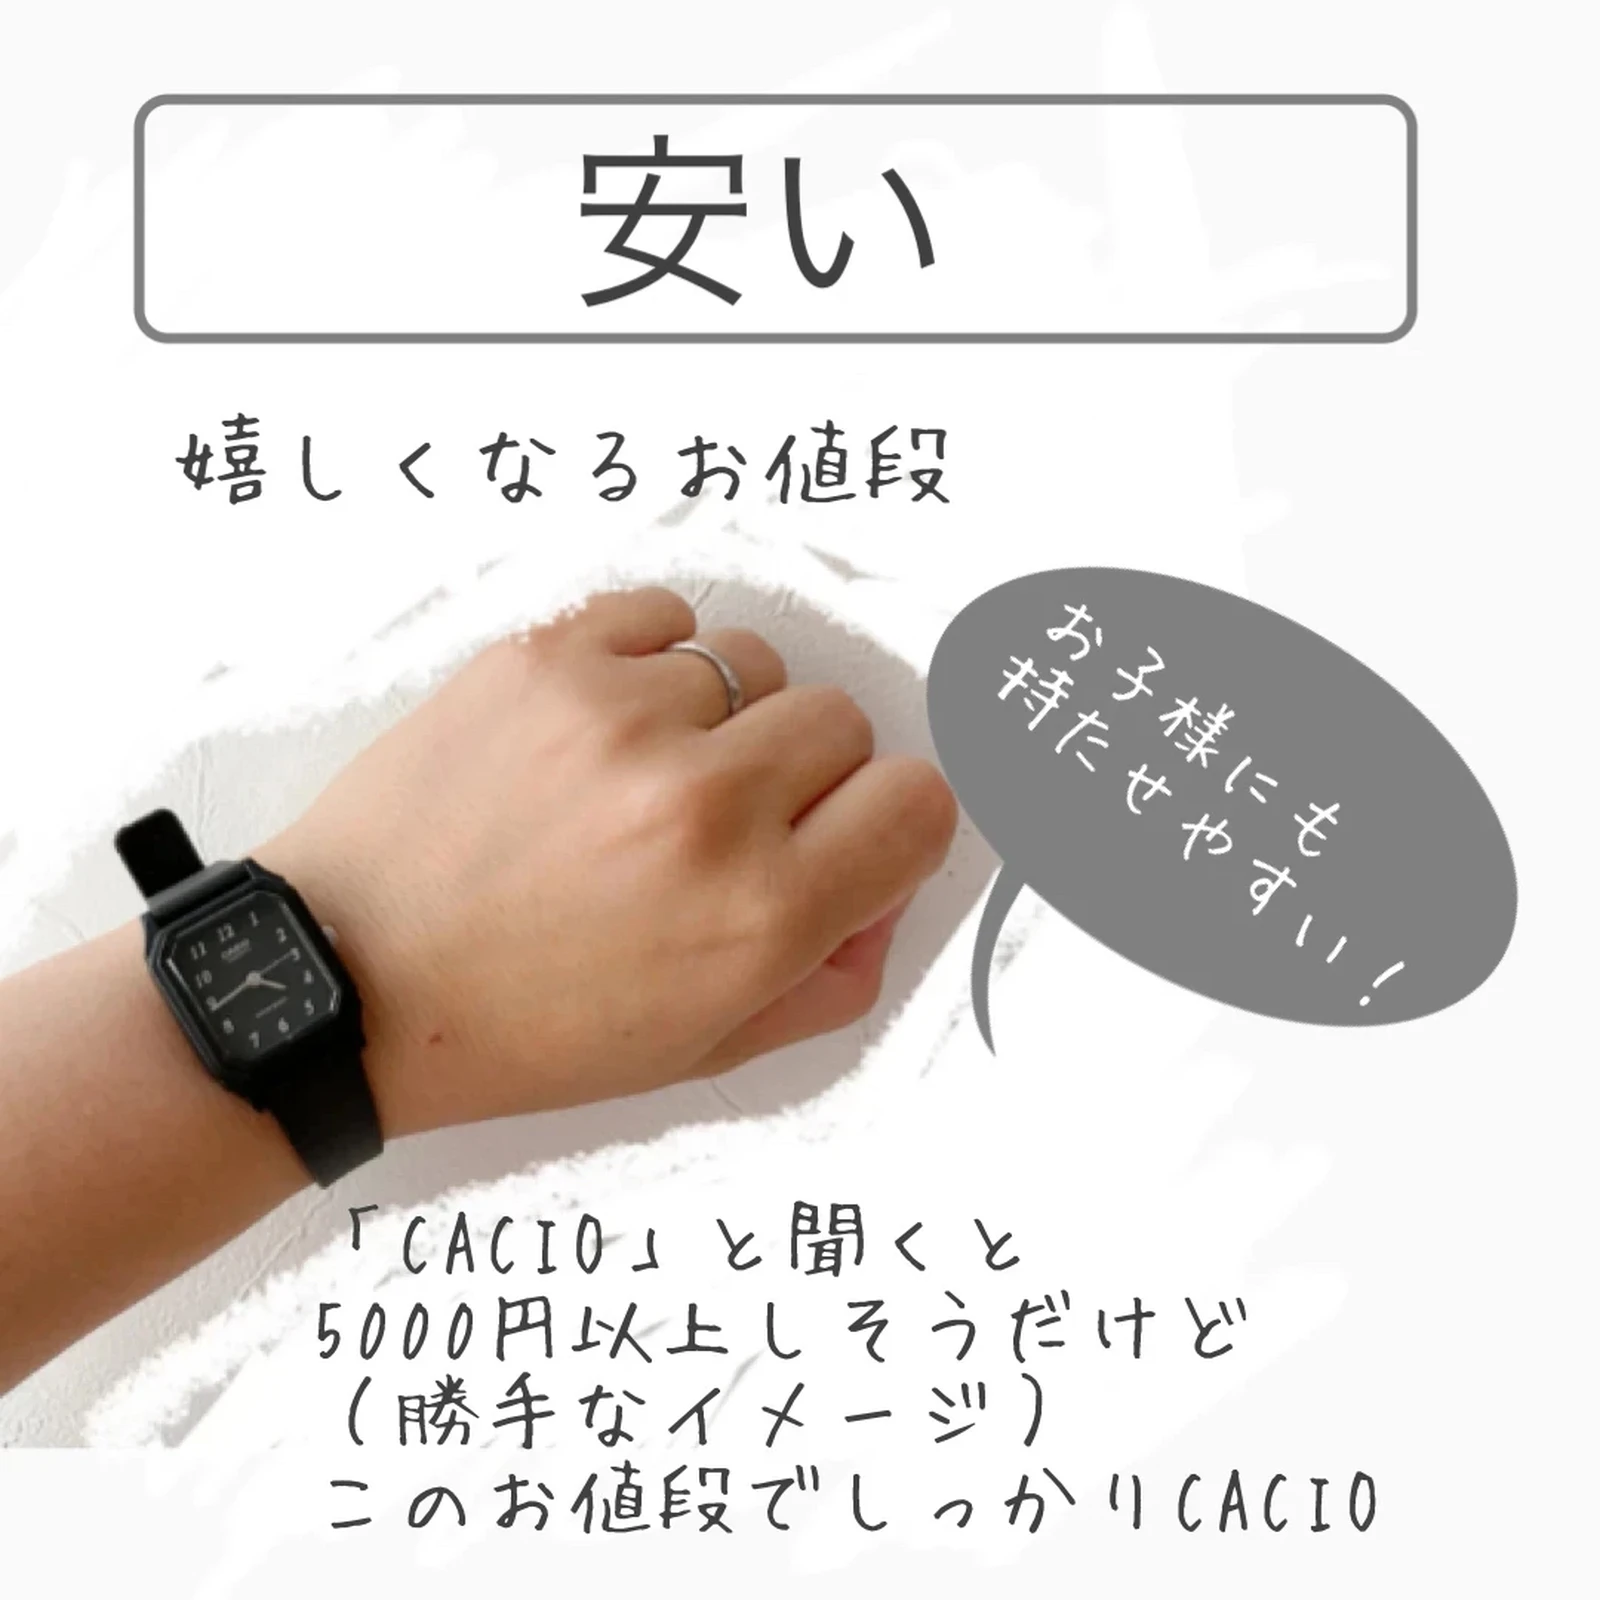 1000円ちょっとのかわいい時計 ℎ𝑎𝑟𝑢𝑘𝑎𓅼が投稿したフォトブック Lemon8